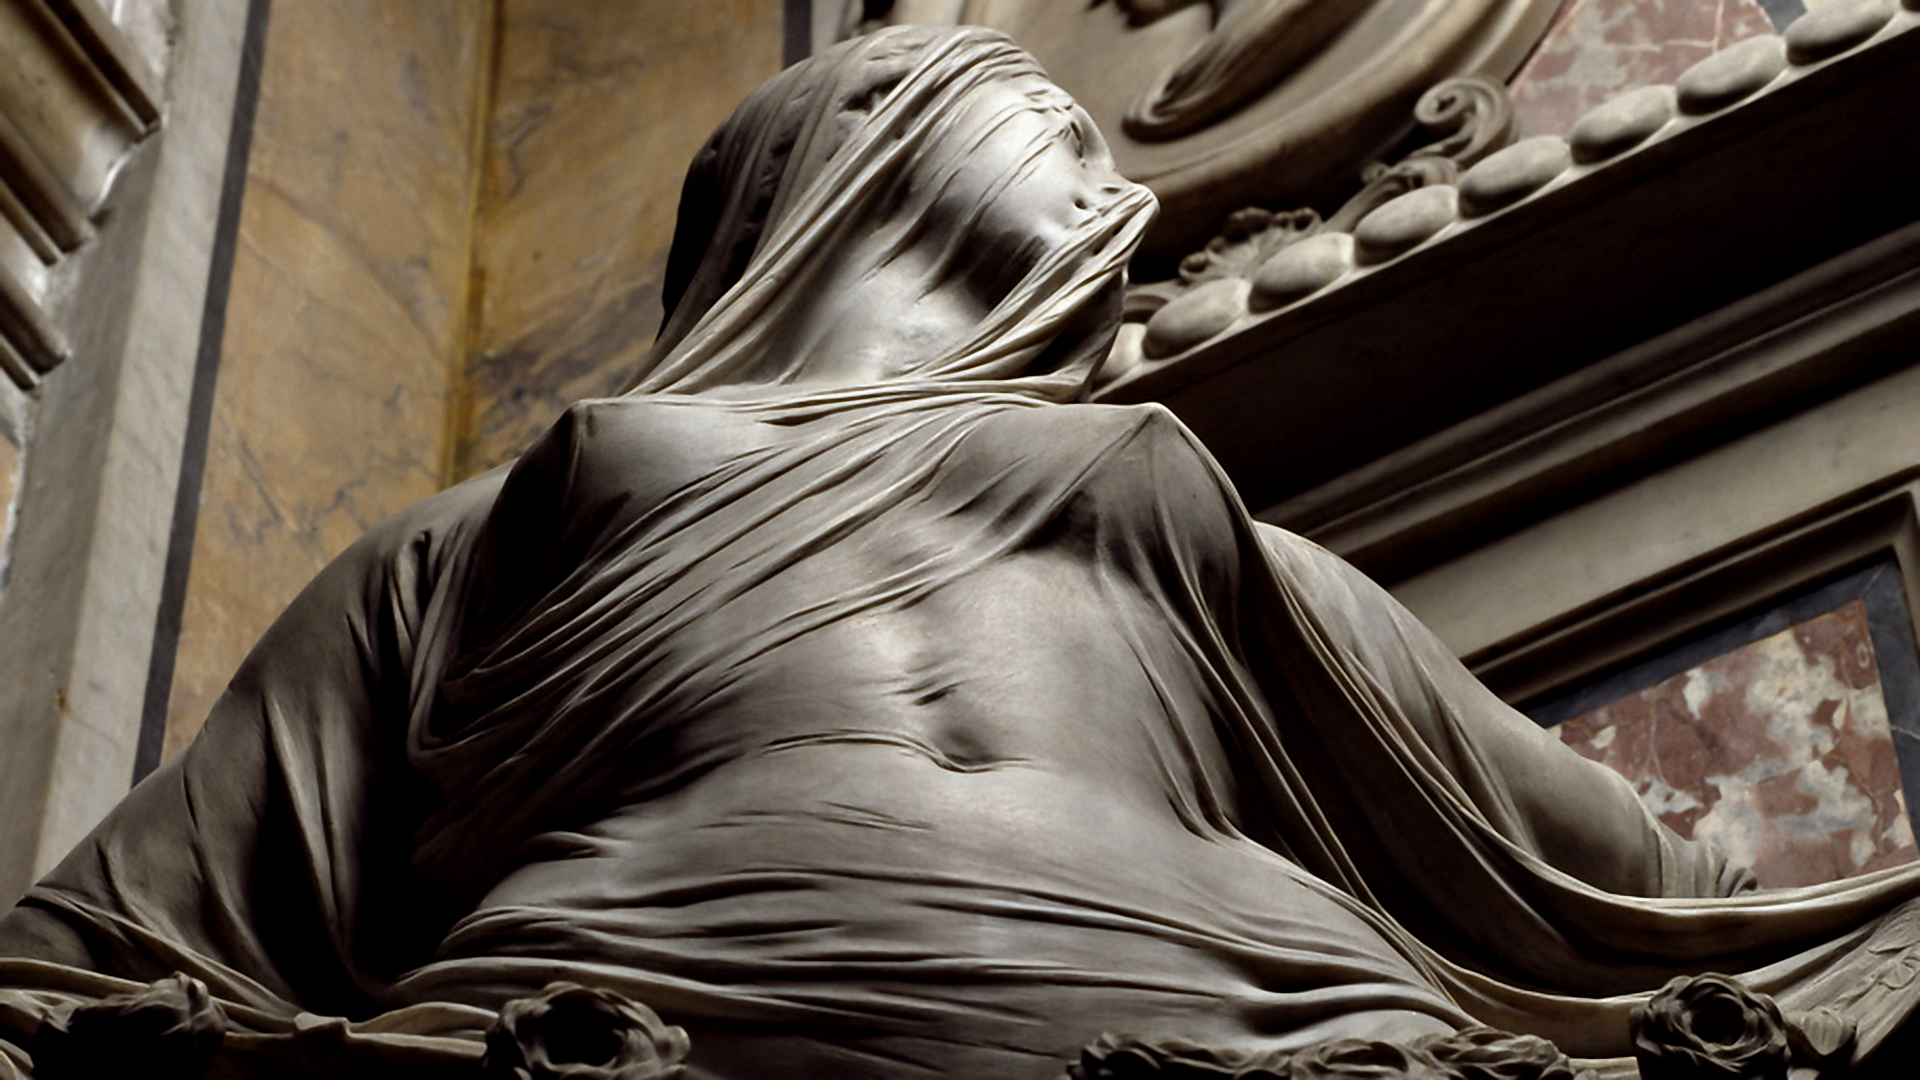 General 1920x1080 sculpture women boobs classic art